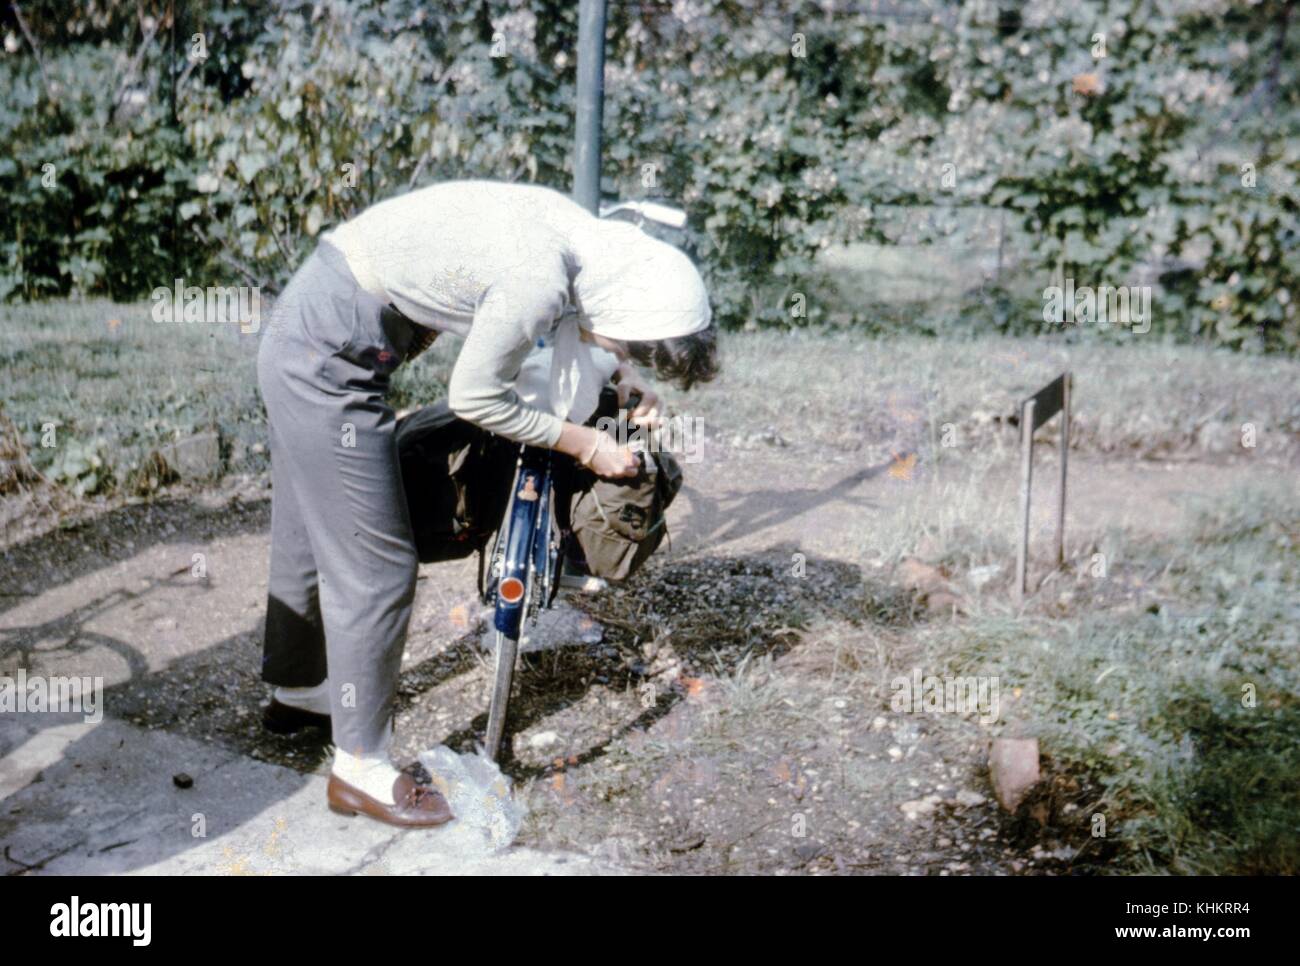 Ein Foto von einer Frau mit ihrem Fahrrad, sie versucht, ein Objekt aus der Satteltasche abzurufen, sie trägt graue Hose mit braun Slipper und ein weißes T-Shirt mit einem weißen Kopftuch, das Fahrrad ist neben einem kleinen Schmutz weg, 1965 geparkt. Stockfoto